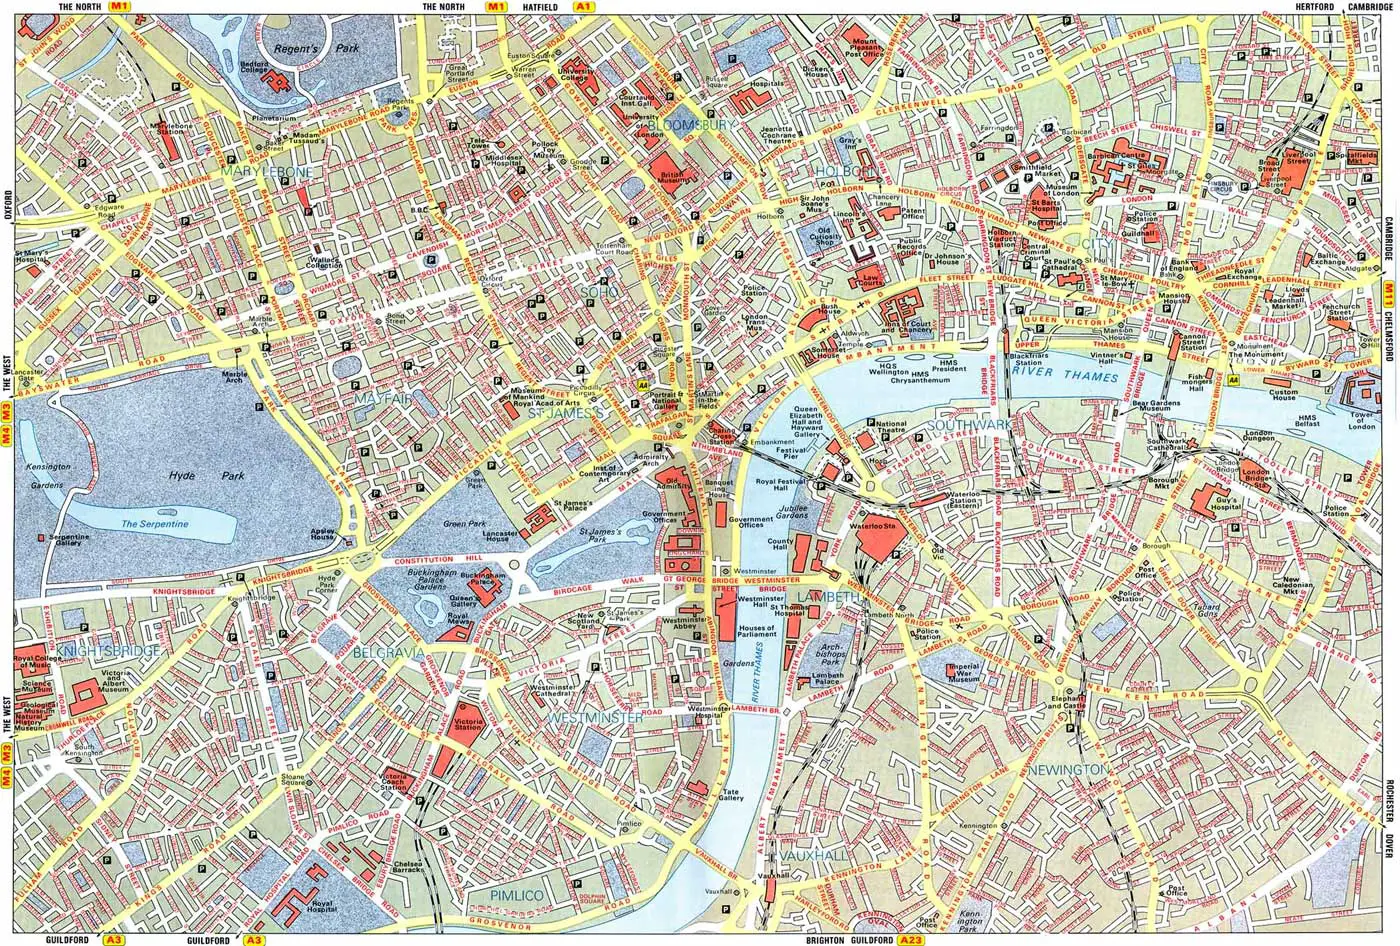 City Map of London - MapSof.net